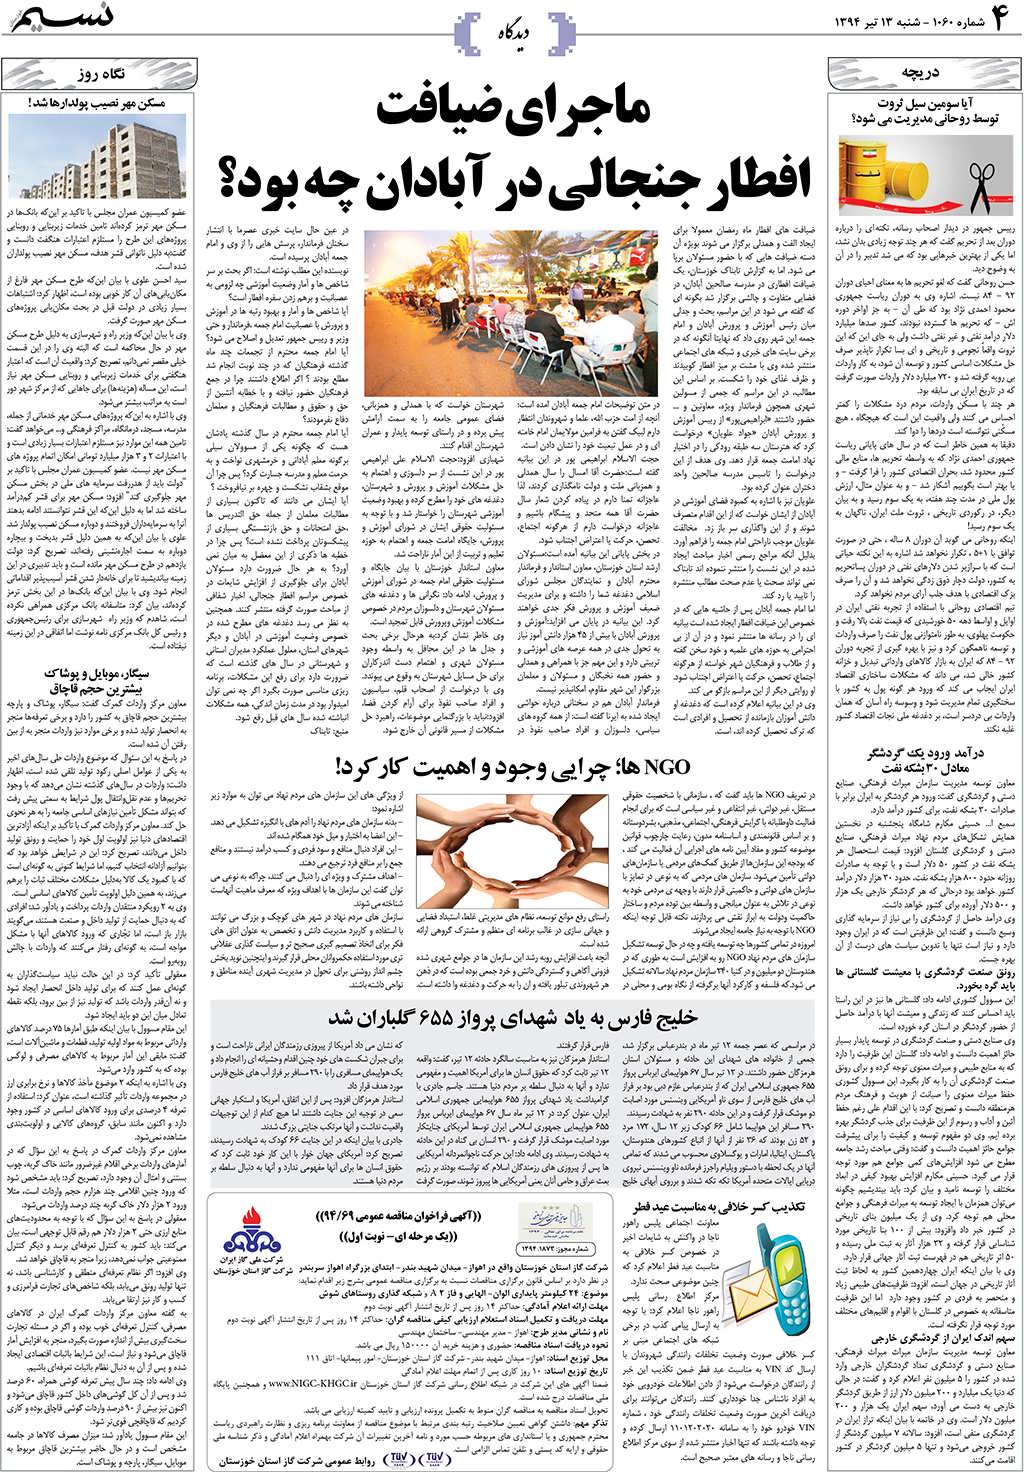 صفحه دیدگاه روزنامه نسیم شماره 1060